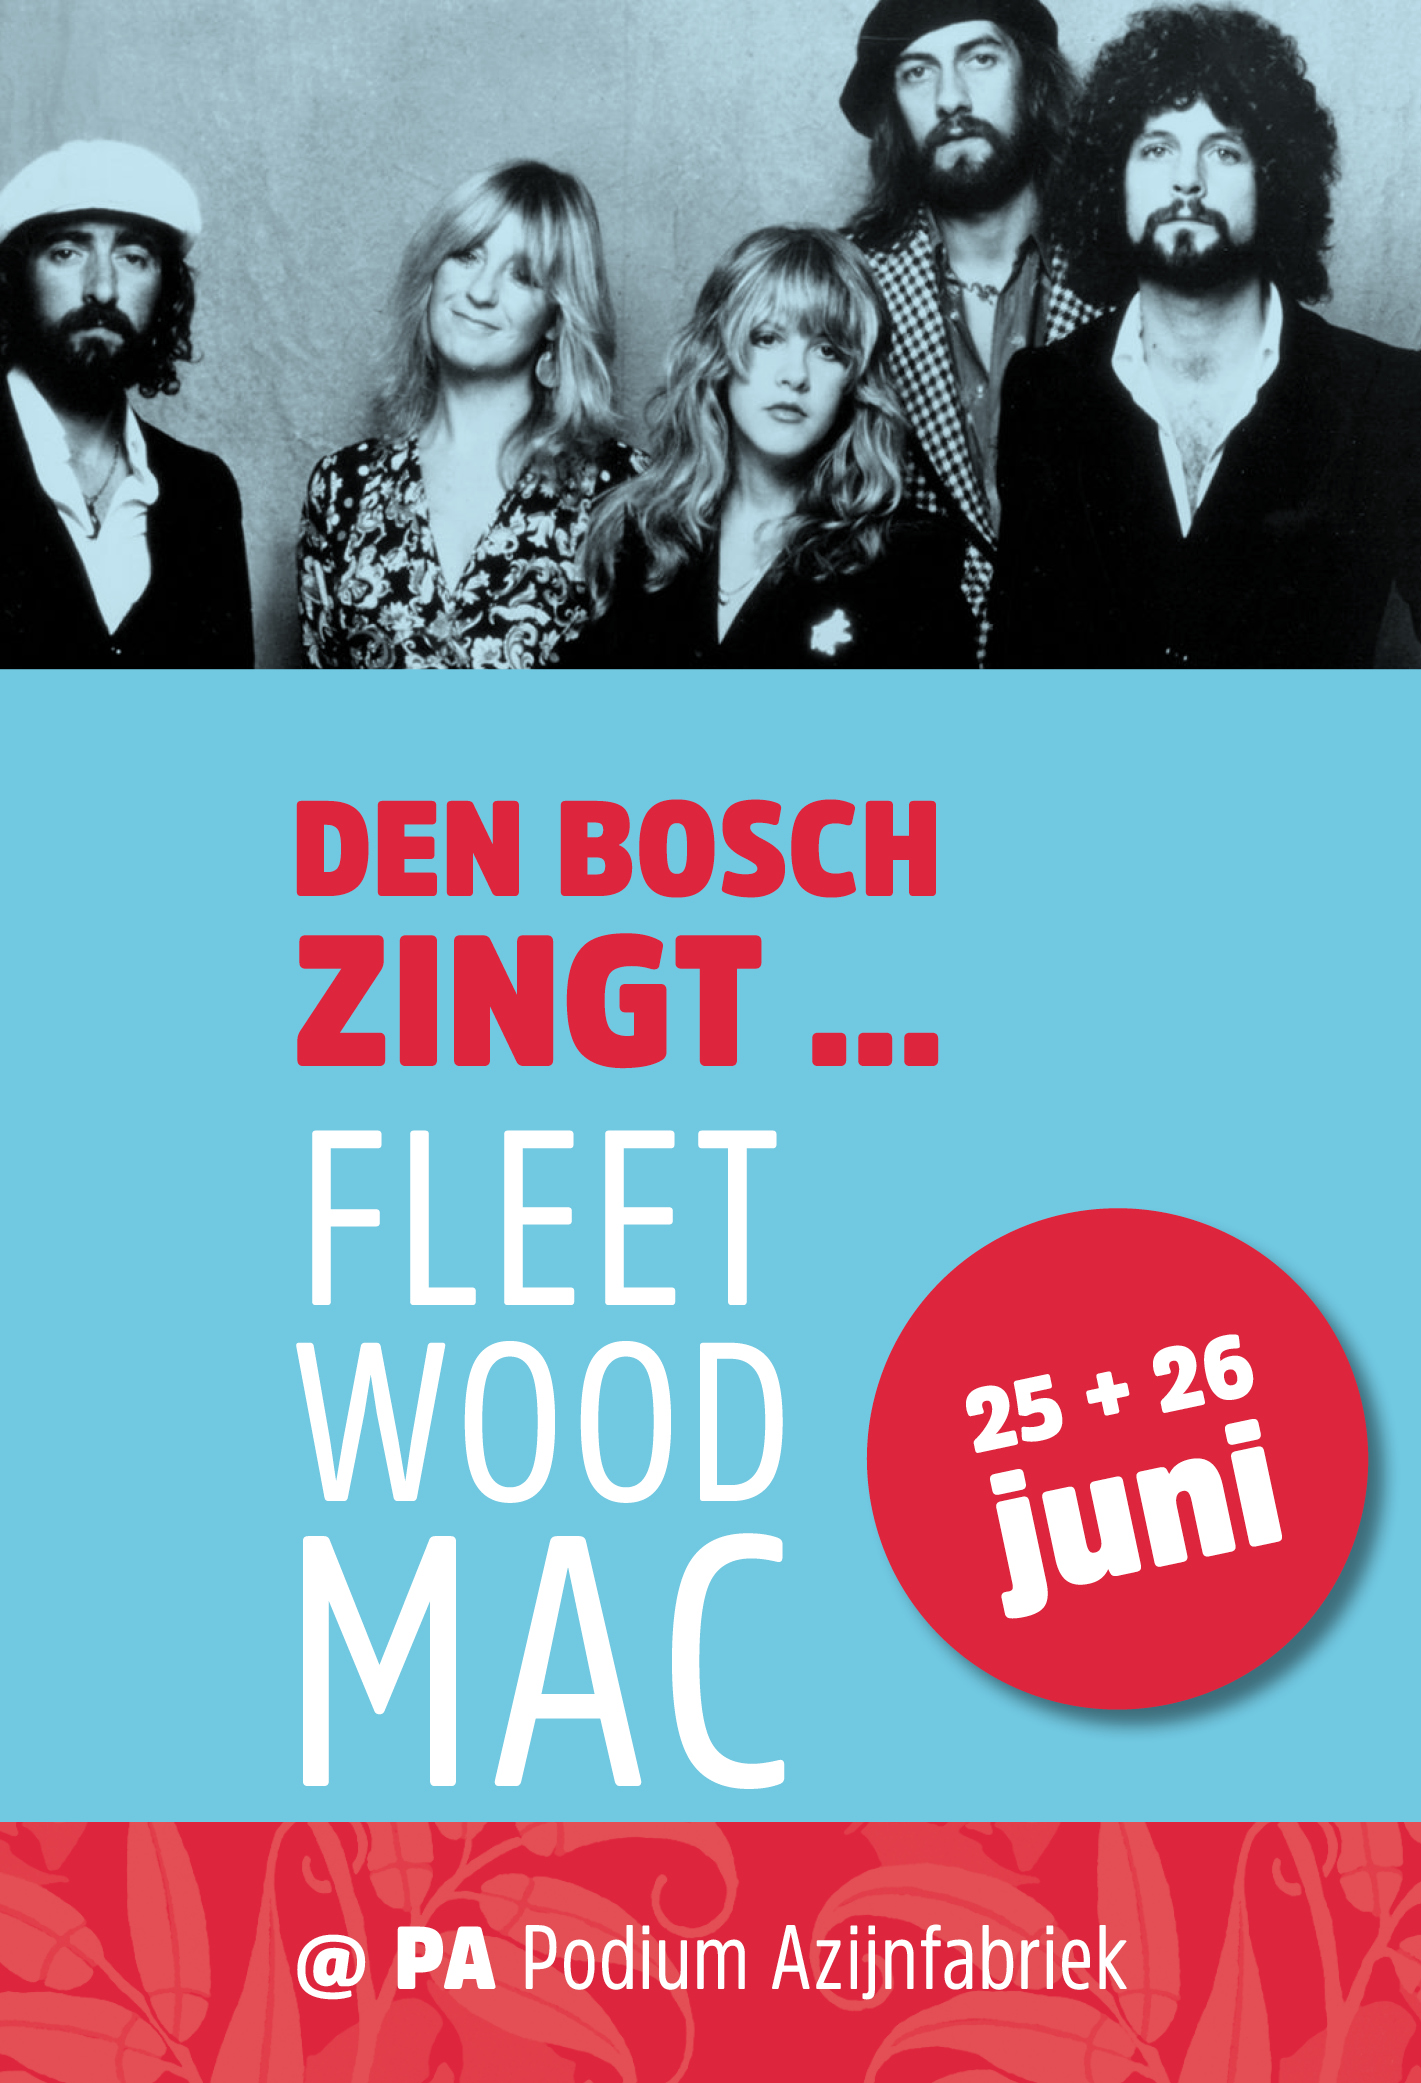 Ticket kopen voor evenement Den Bosch Zingt ... Fleetwood Mac